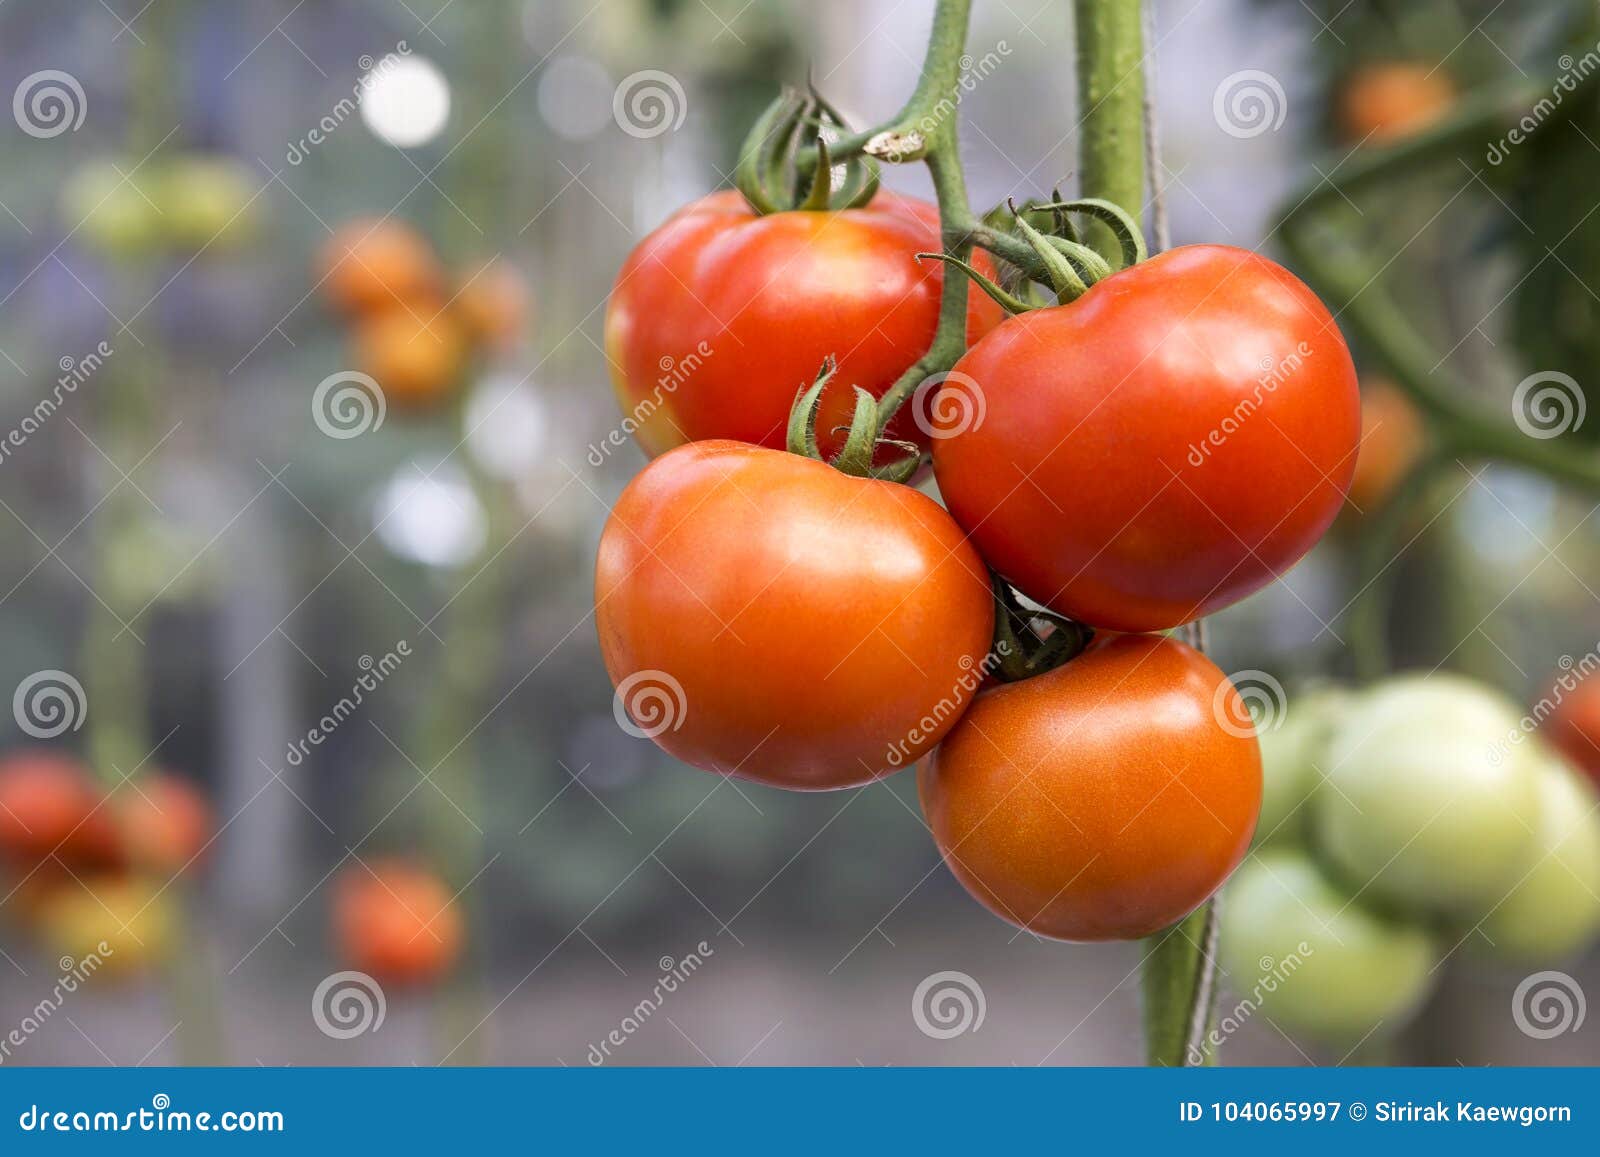 Помидоры бабушкино отзывы. Сорт томата Бабушкино. Бабушкино тепло томат. Томат Хоумстед. Партнер томат Бабушкино.